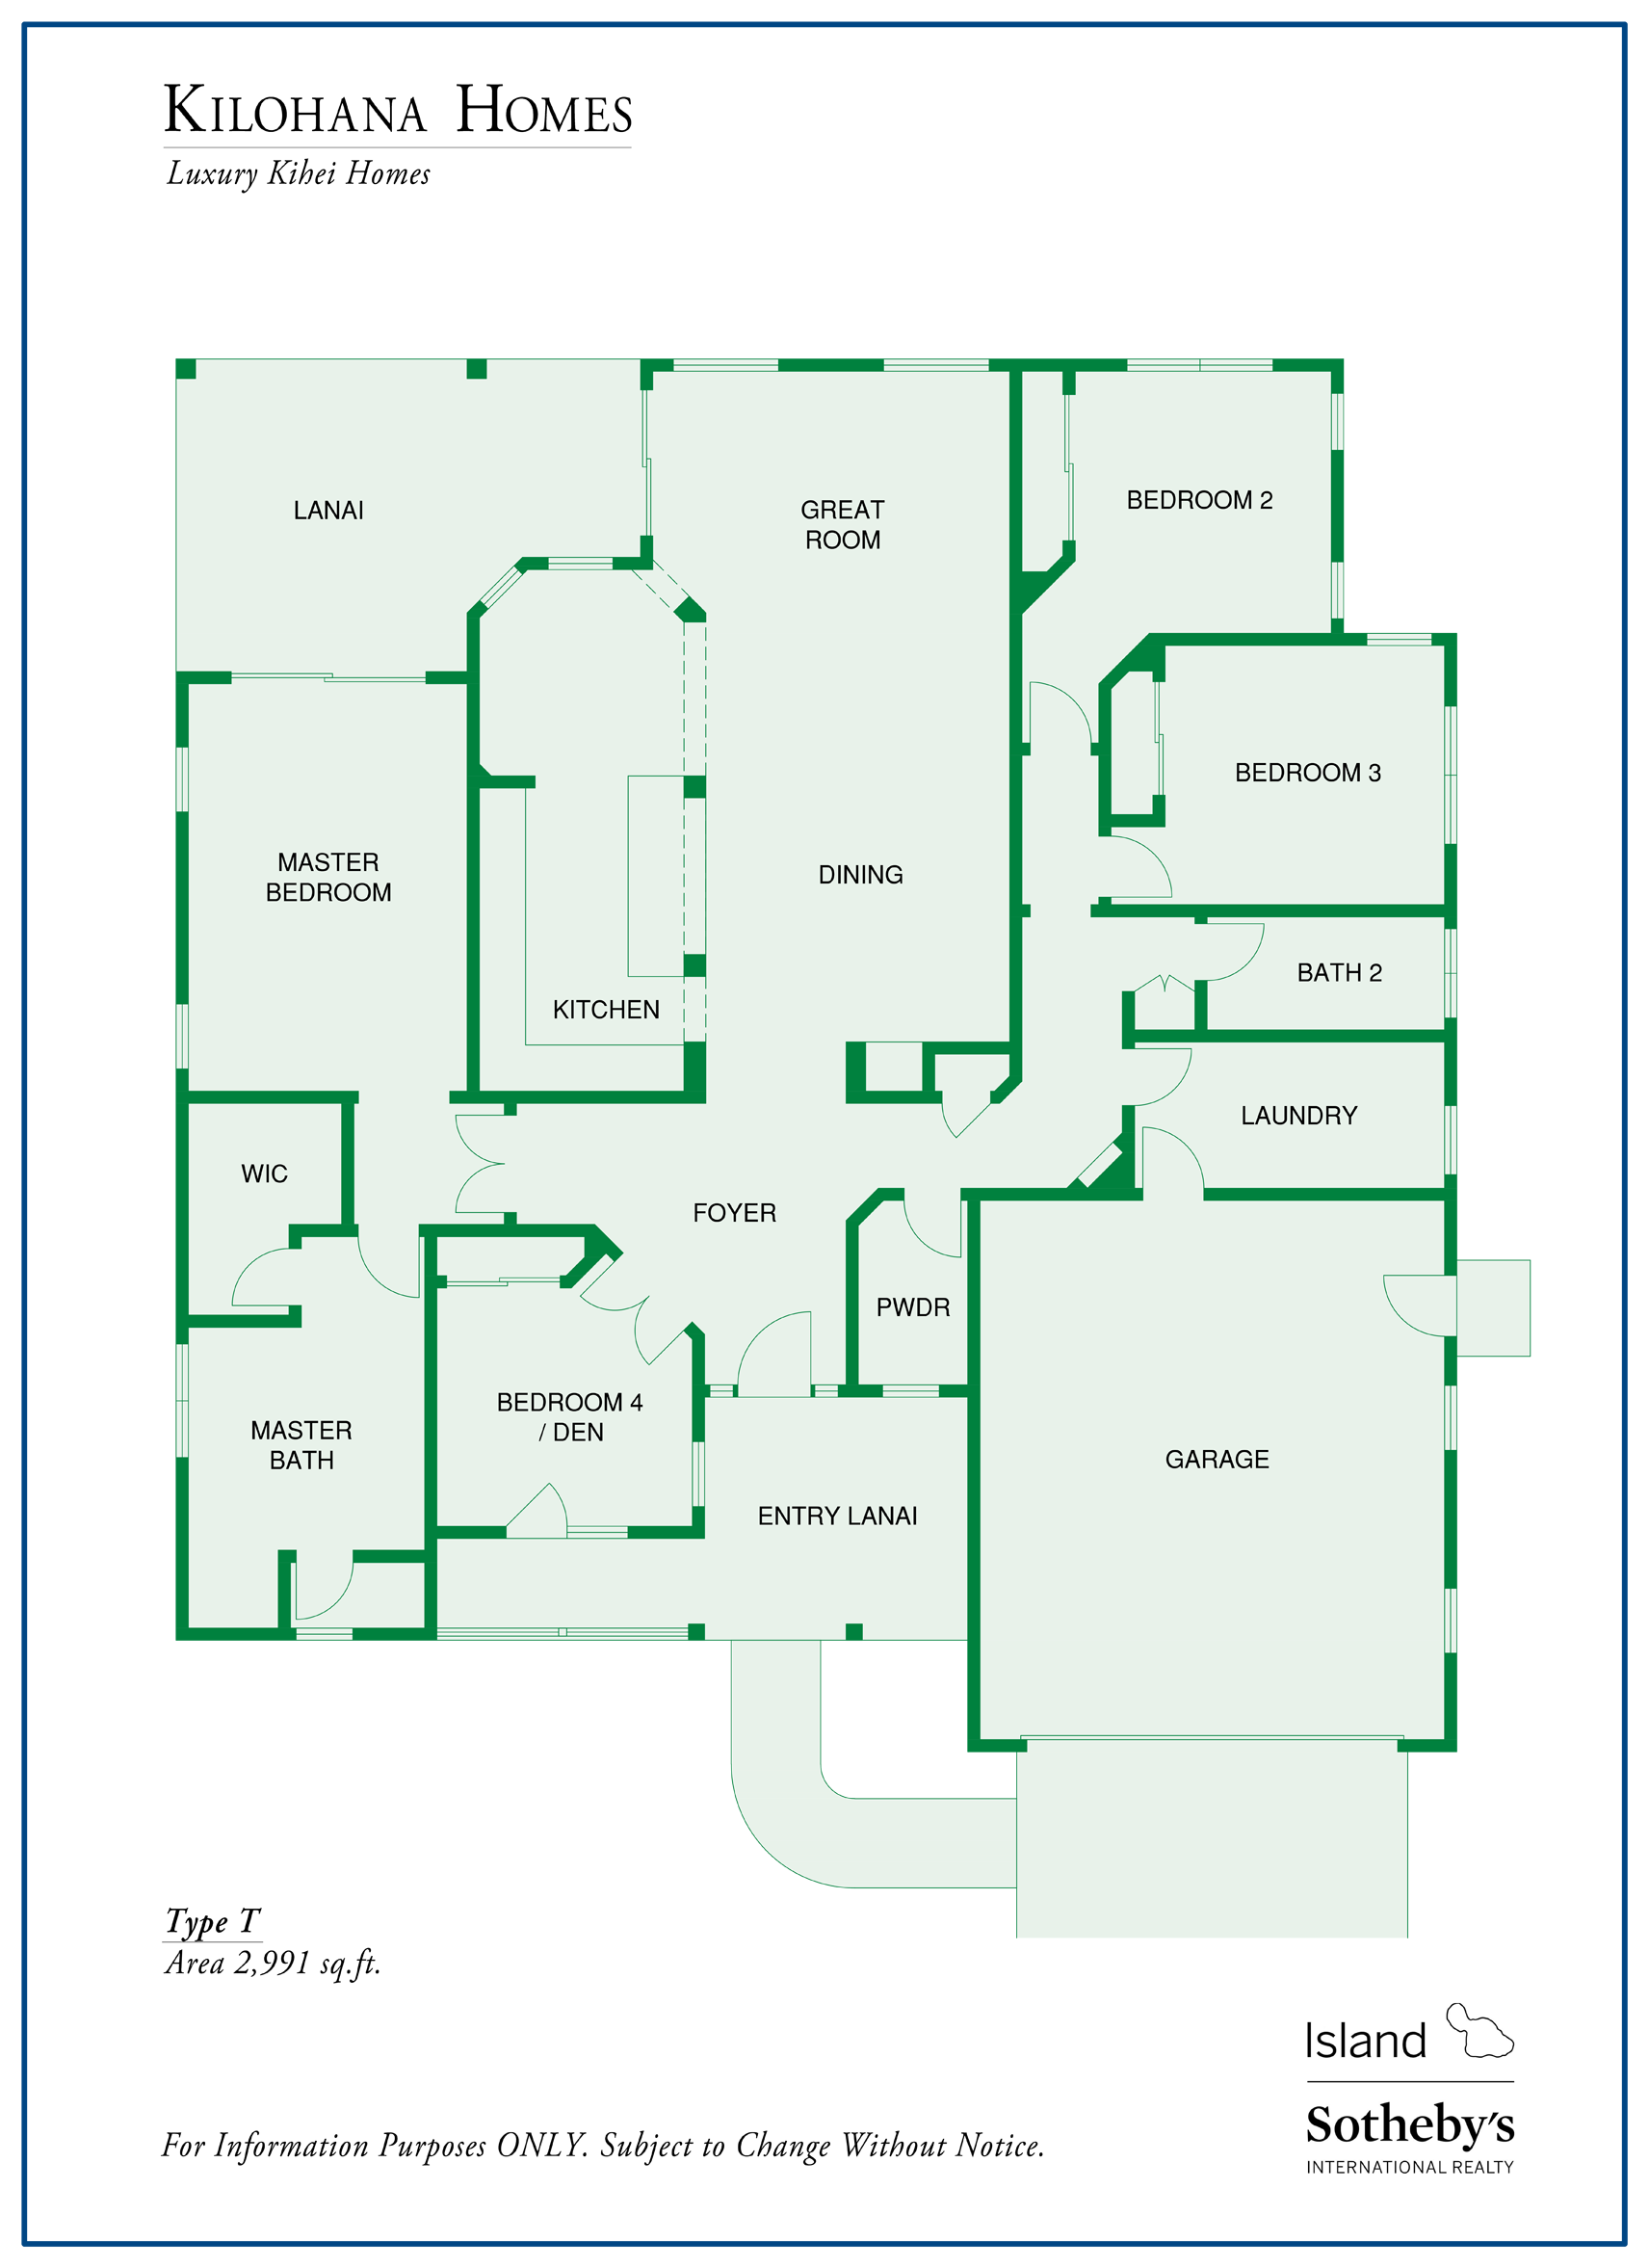 kilohana home floor plan kihei